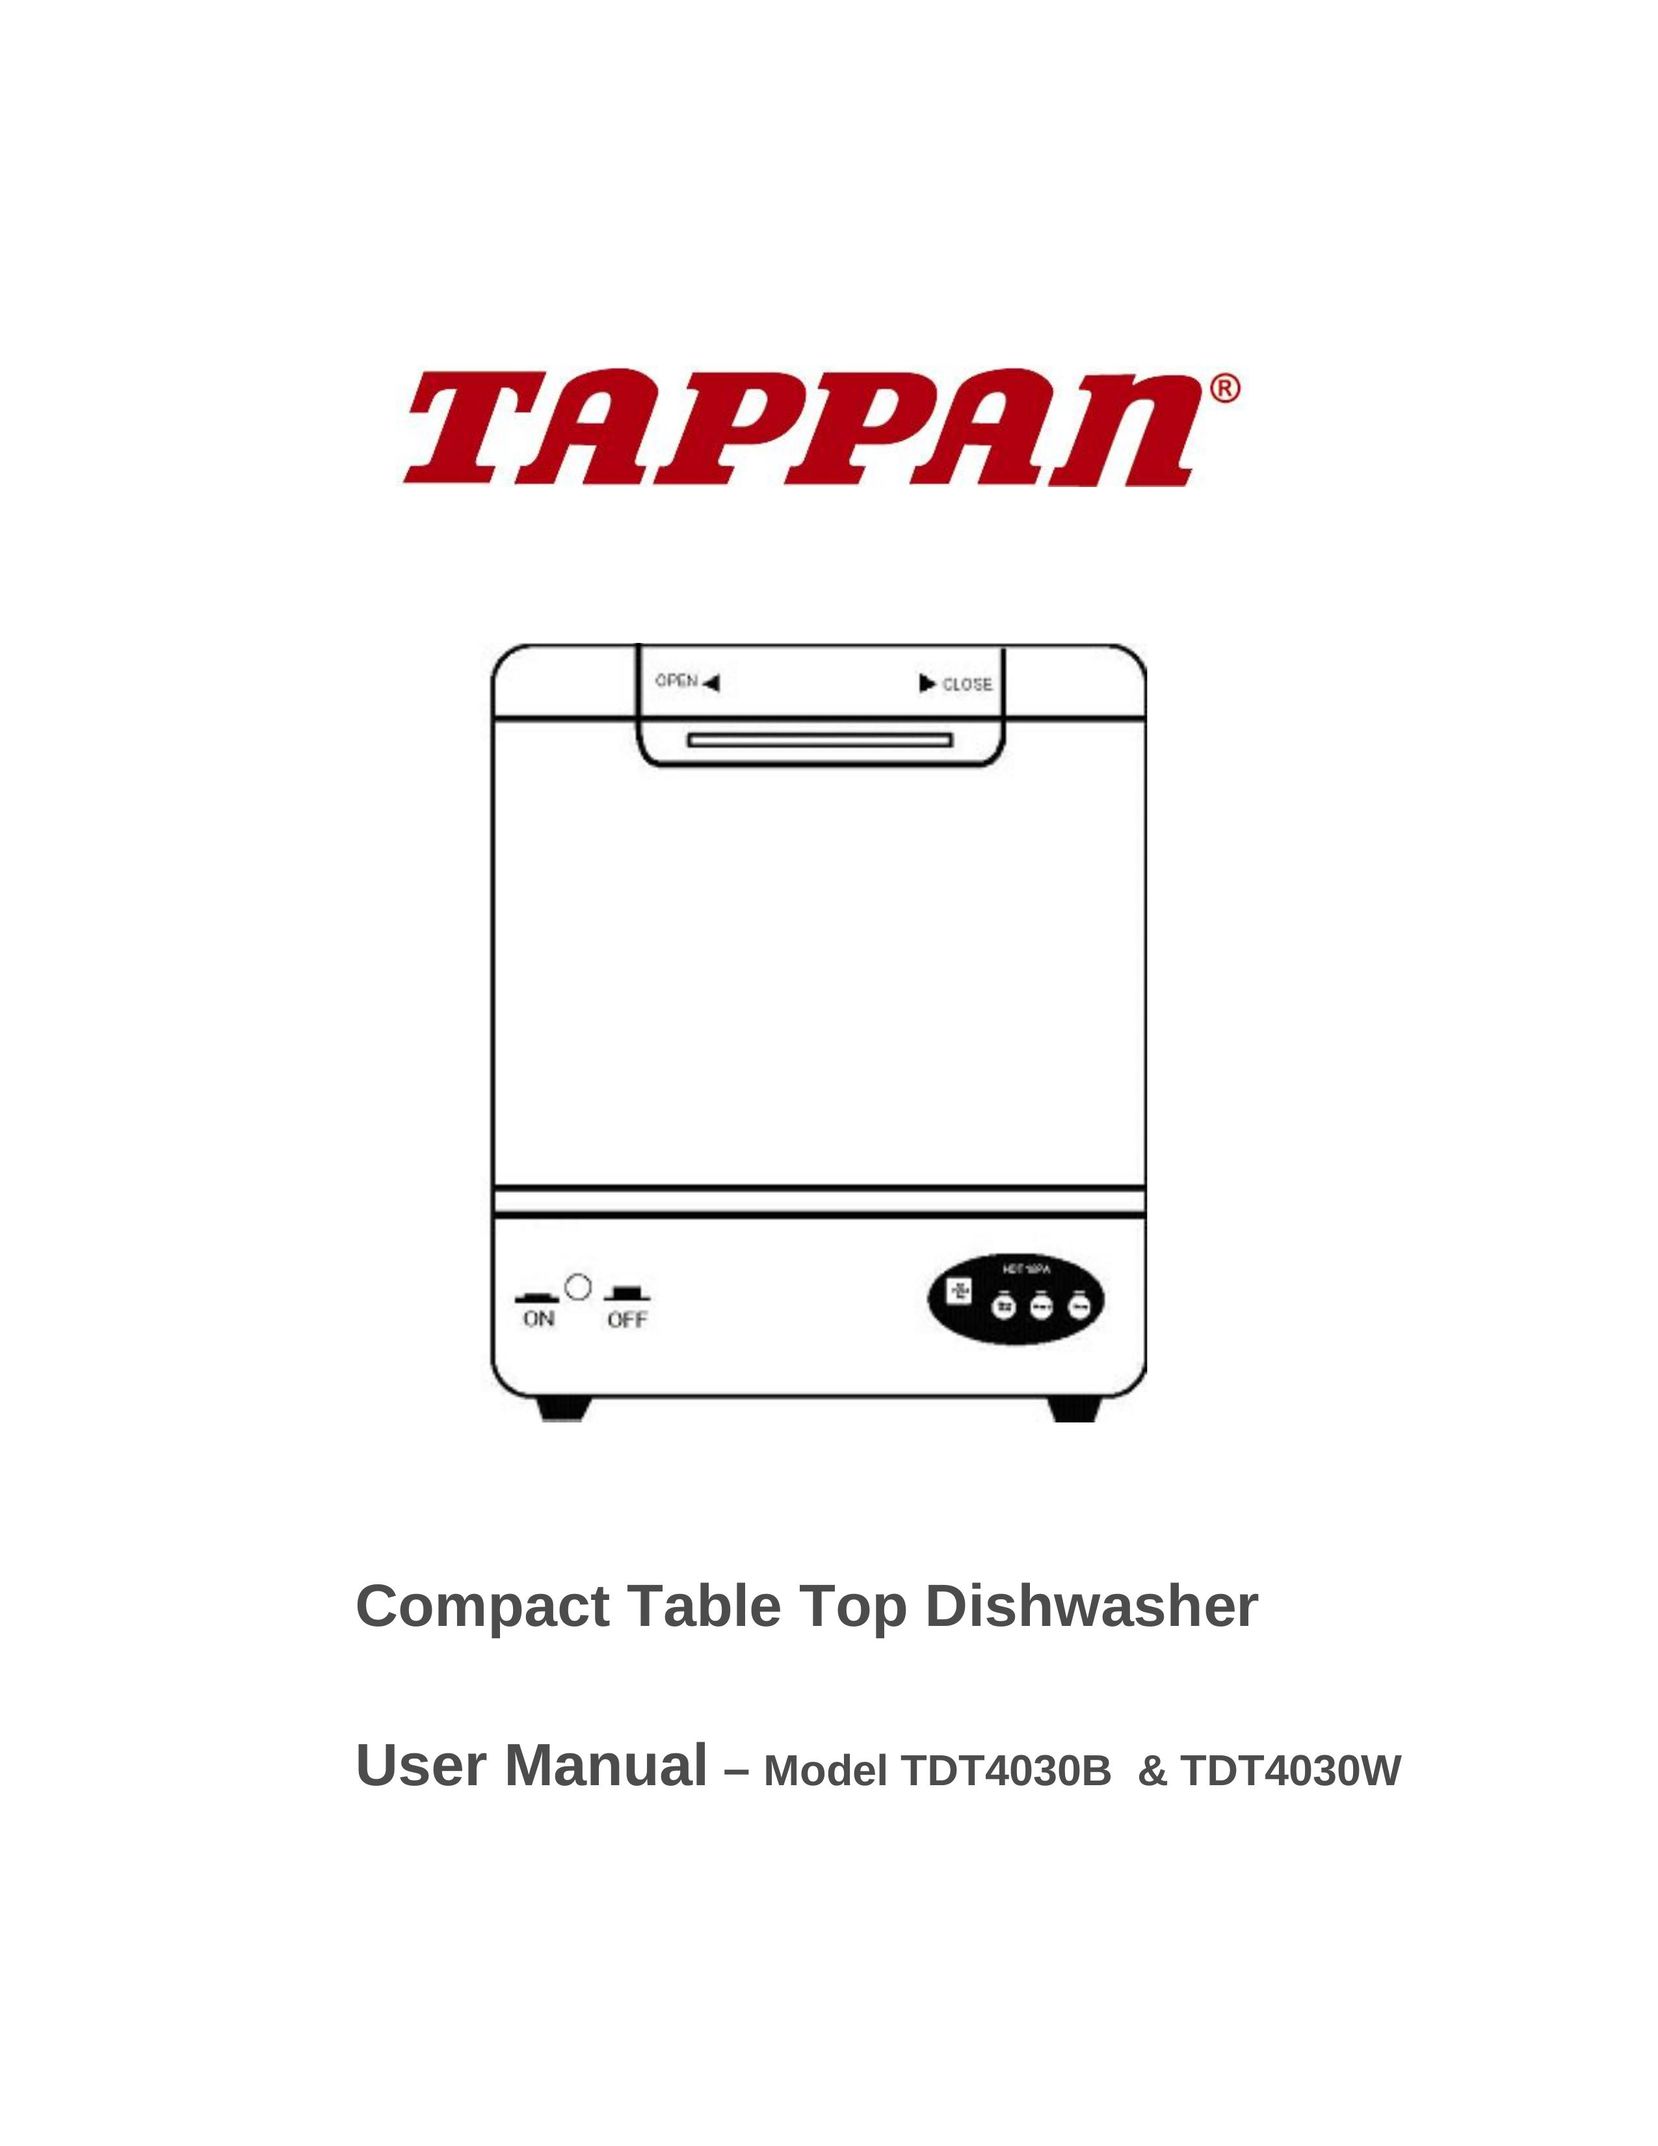 Tappan TDT4030W Dishwasher User Manual